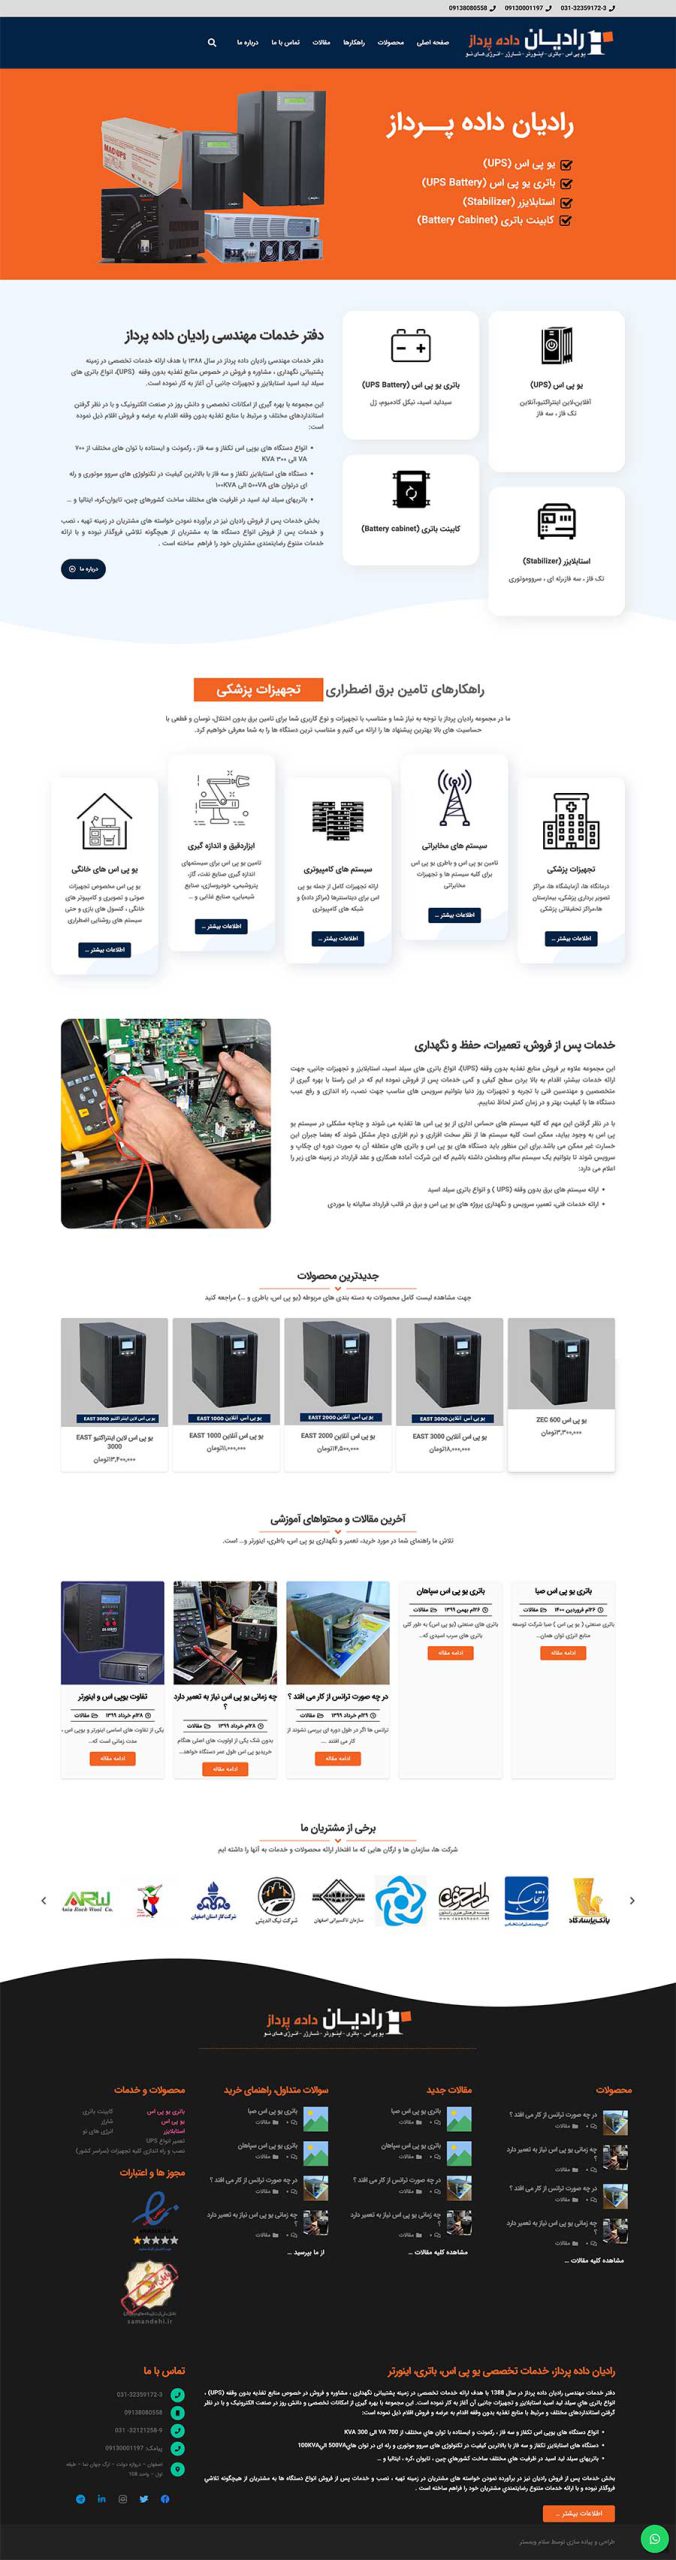 نمای صفحه اول سایت شرکتی رادیان داده پرداز طراحی شده در اصفهان توسط شرکت سلام وبمستر